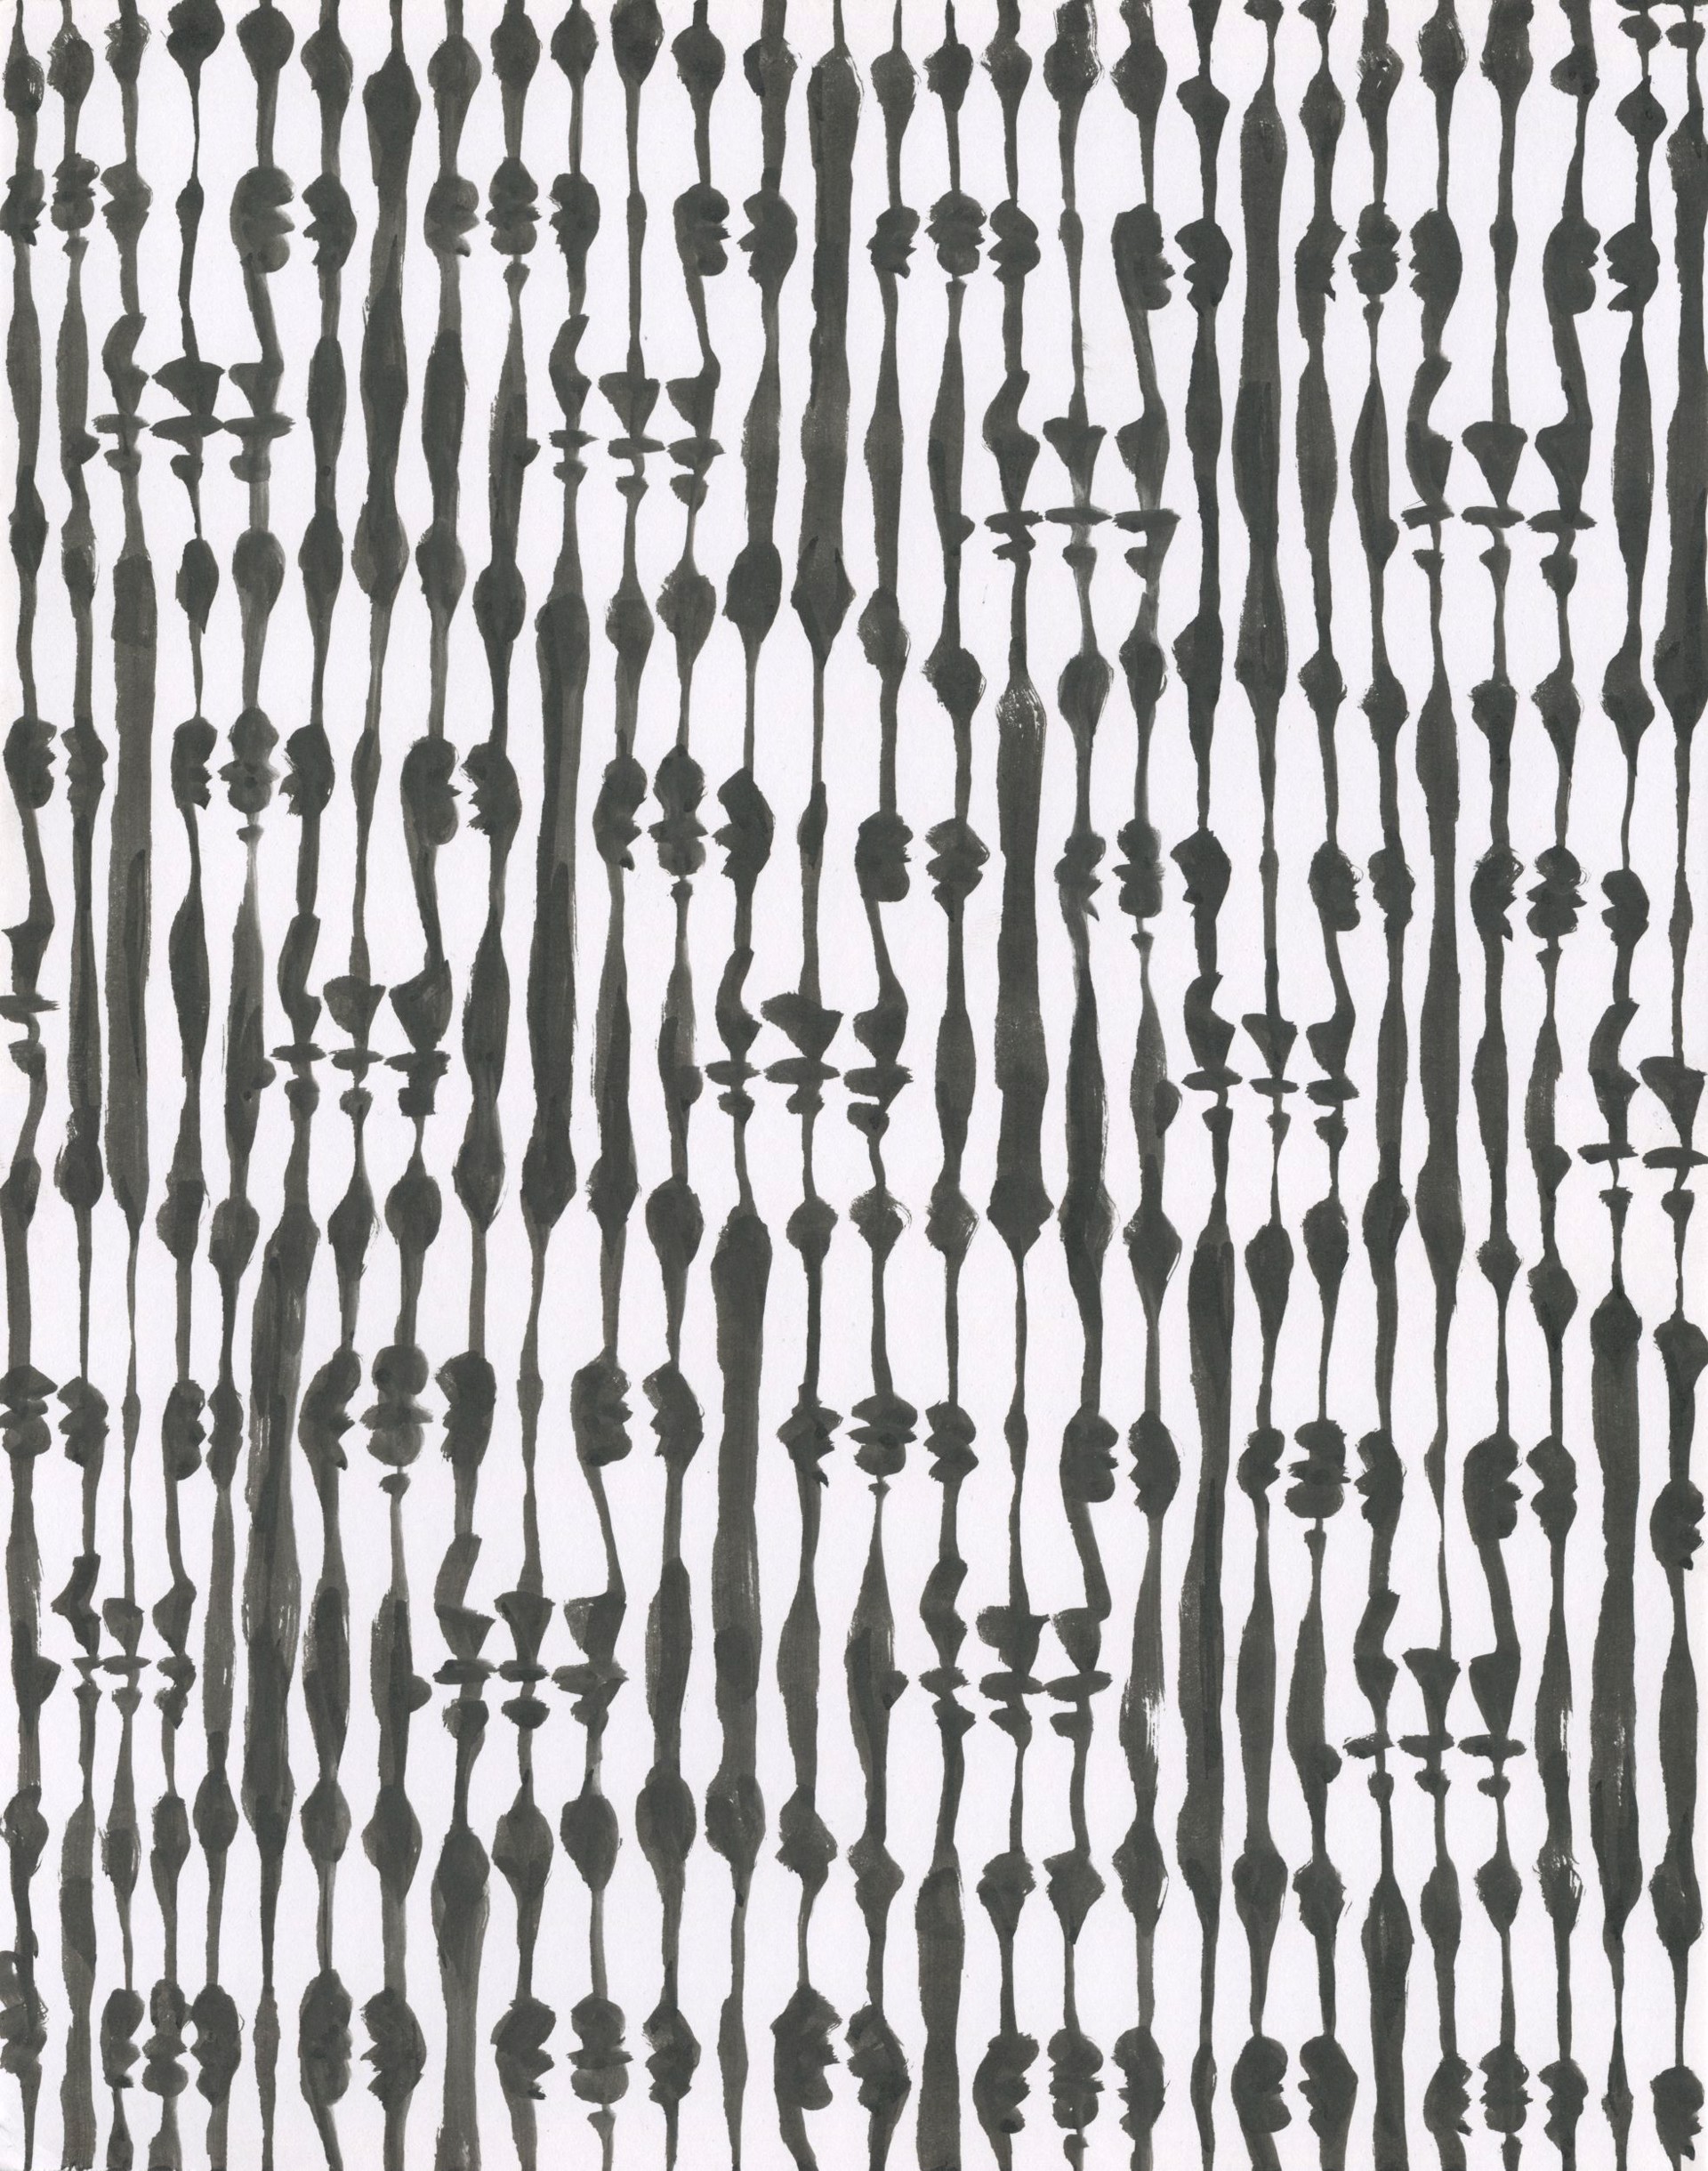 Grid of Faces by Bill Tavis